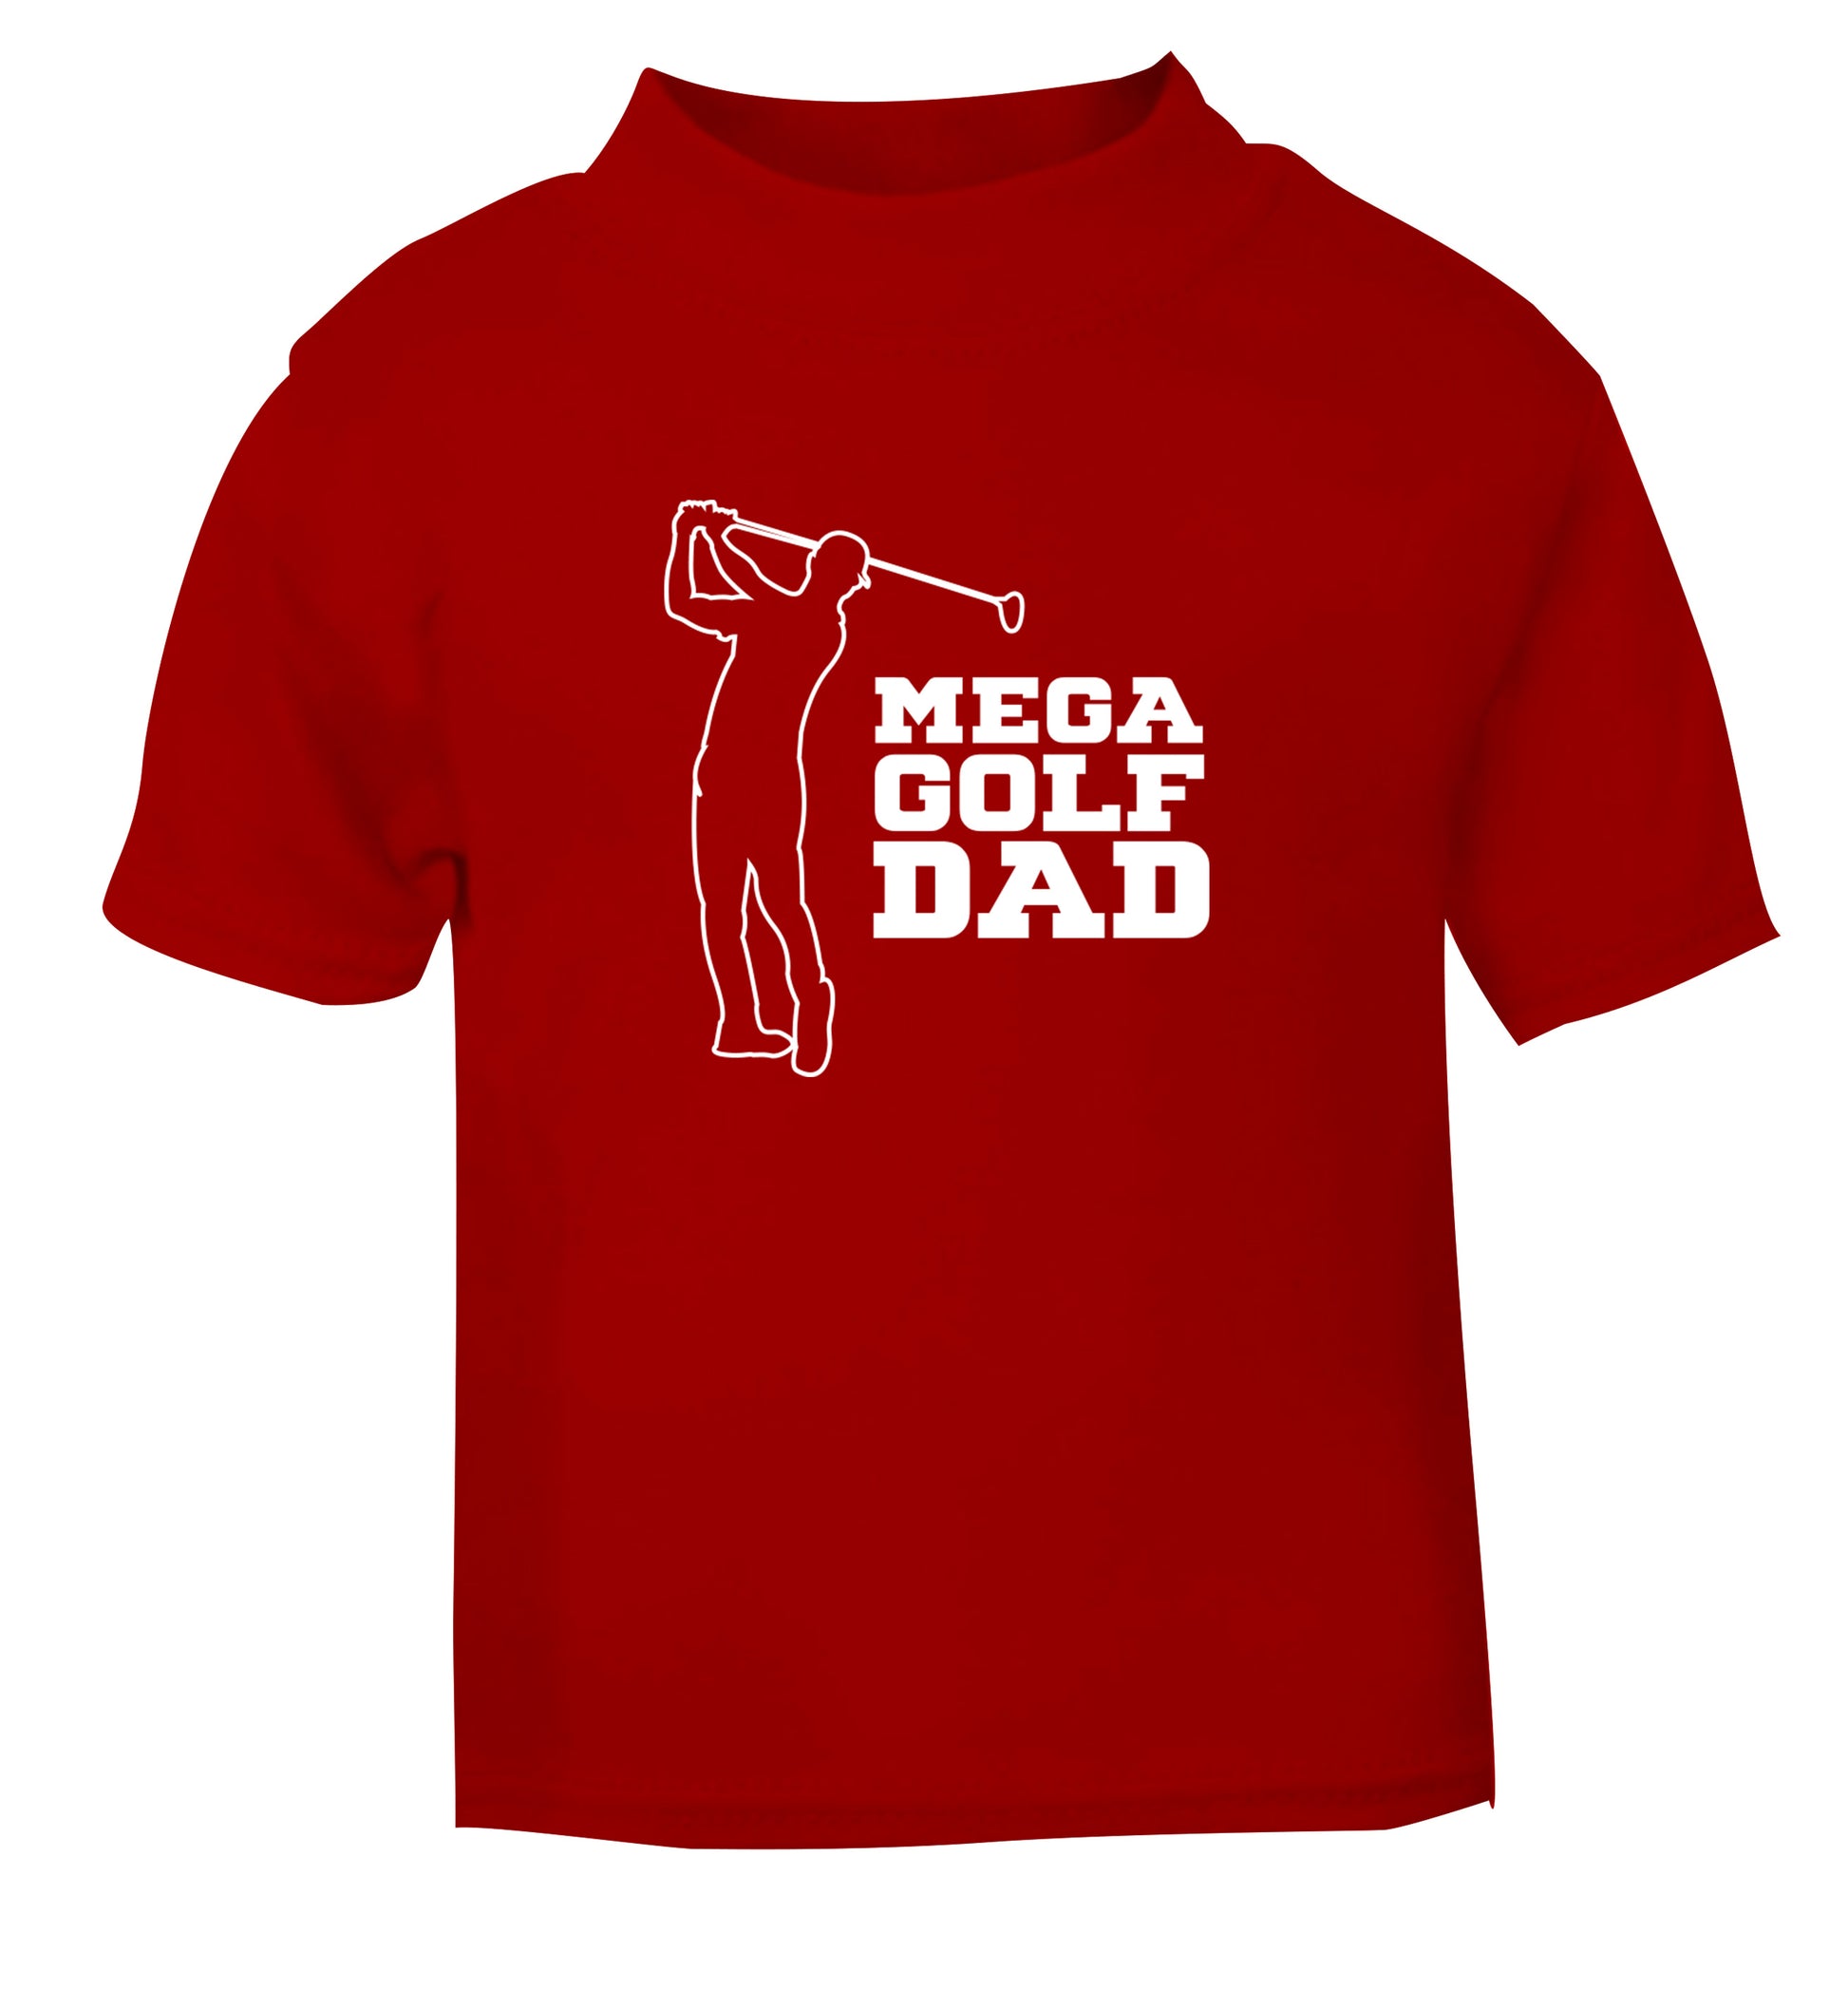 Mega golfing dad red Baby Toddler Tshirt 2 Years